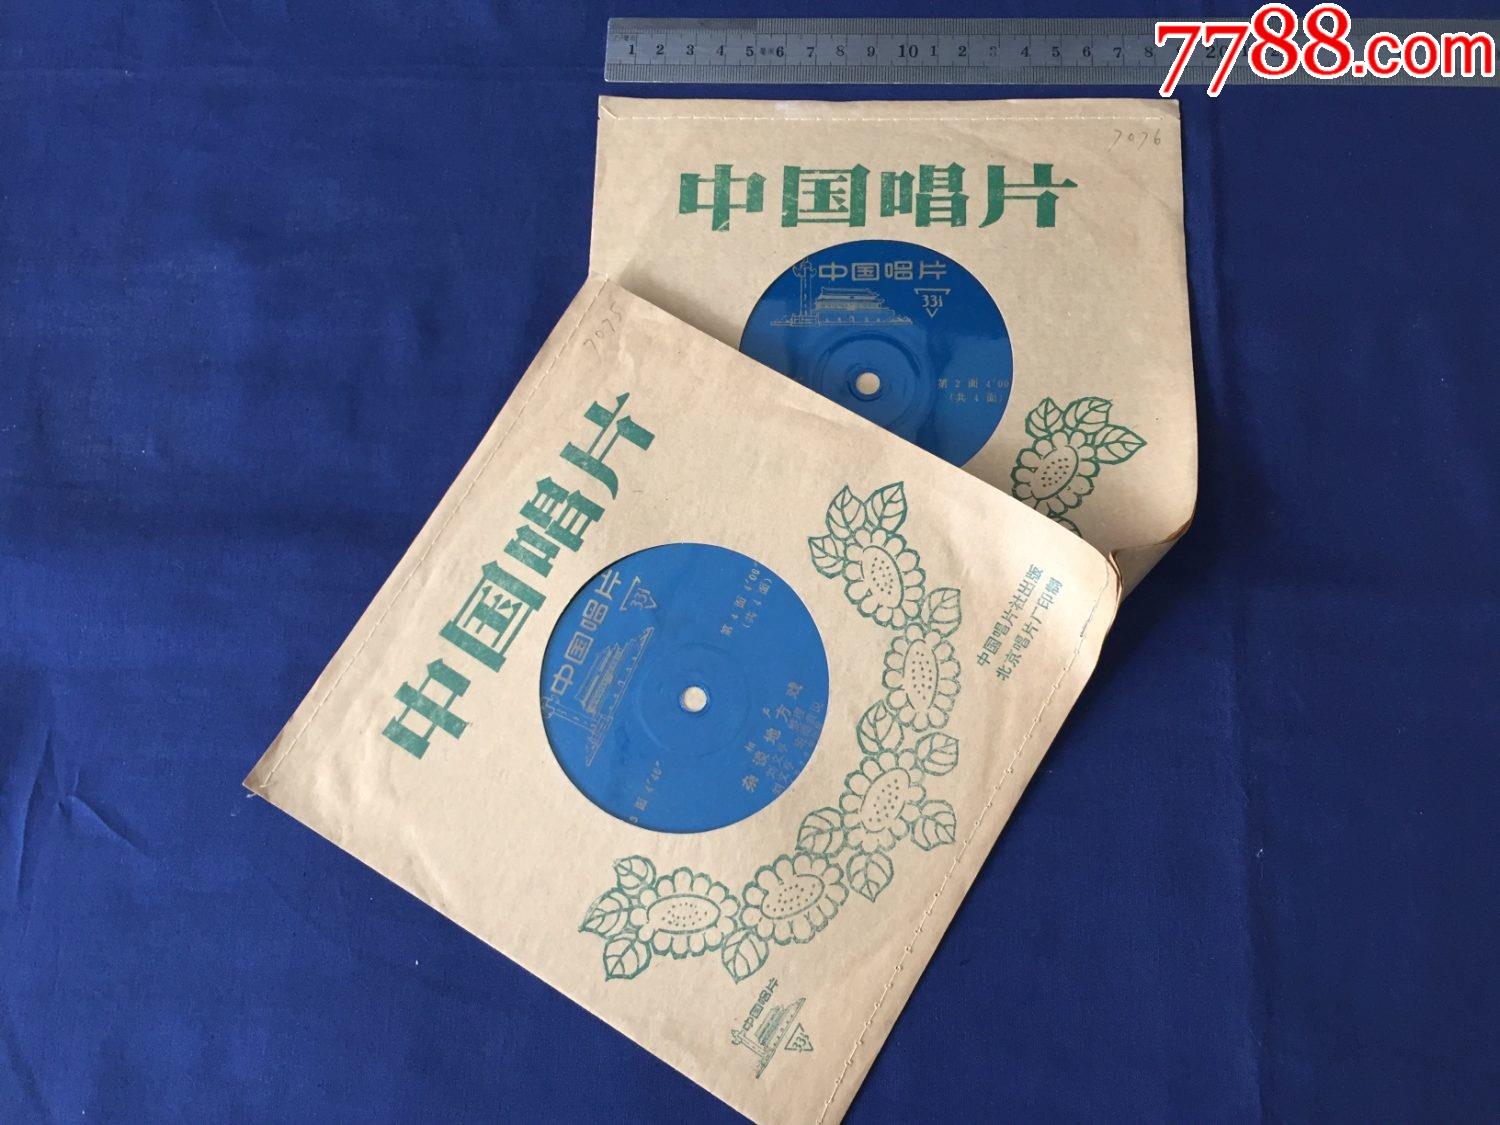 70年代唱片,薄膜小唱片,戏曲,相声:杂谈地方戏,一套2片,刘文亨班德贵